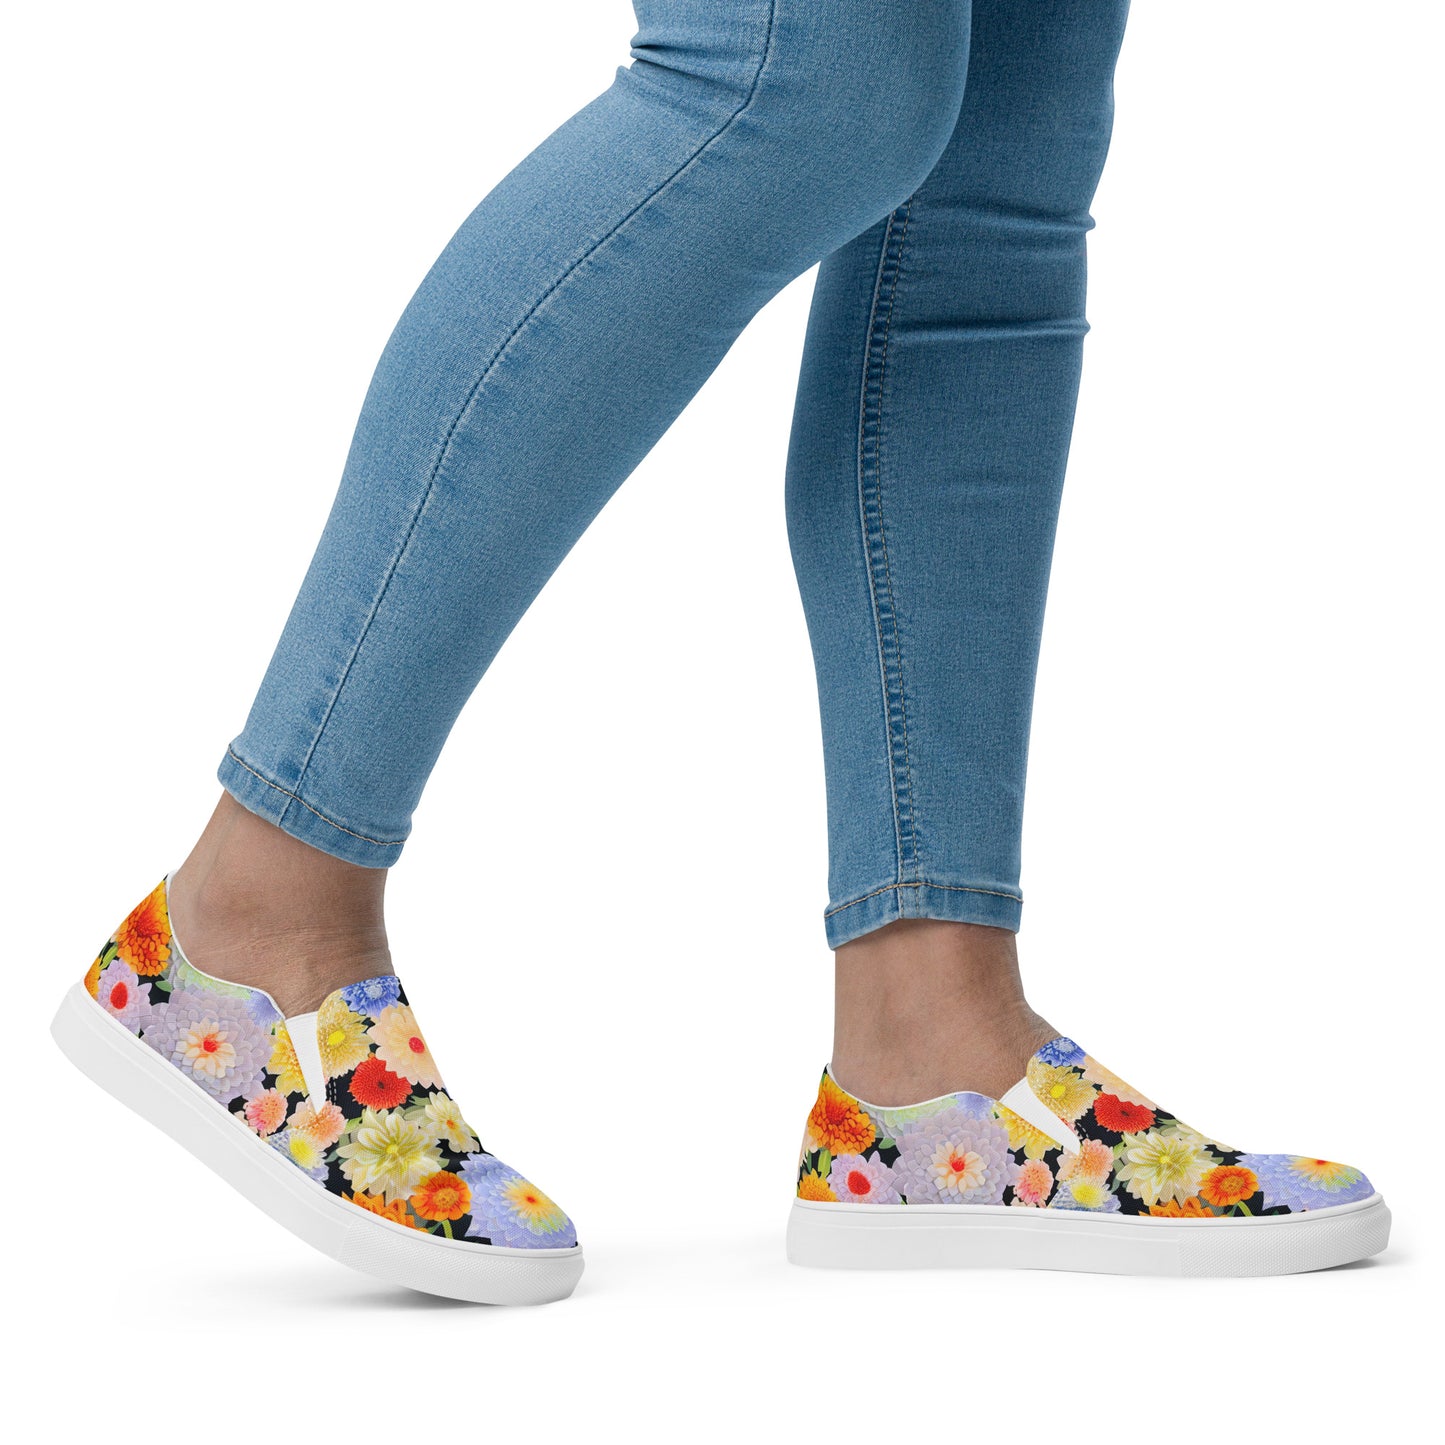 DMV 0004 Floral Women’s slip-on canvas shoes